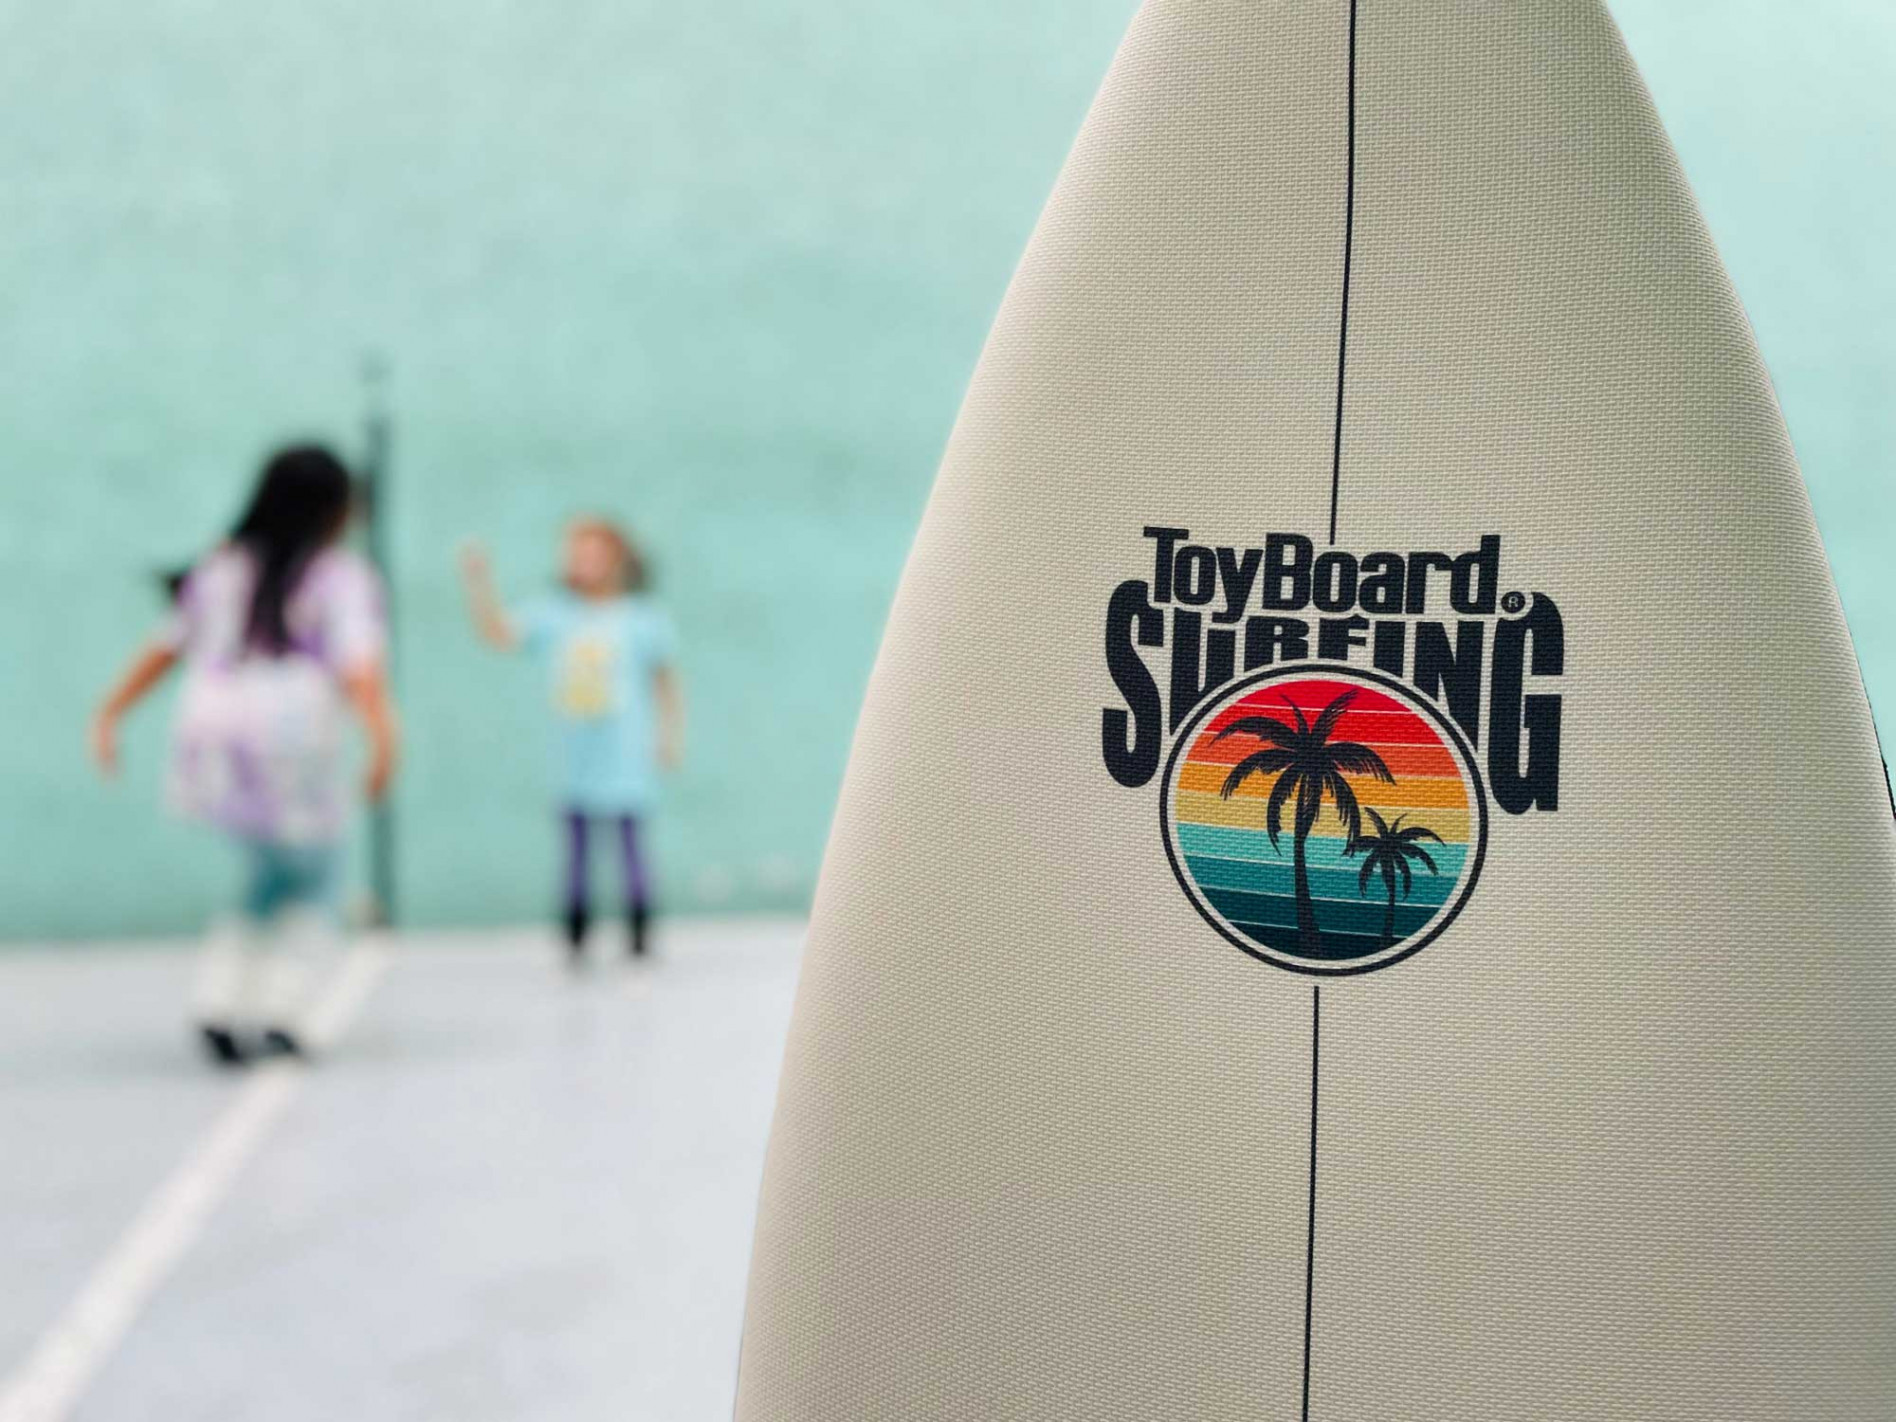 Toyboard Surfing